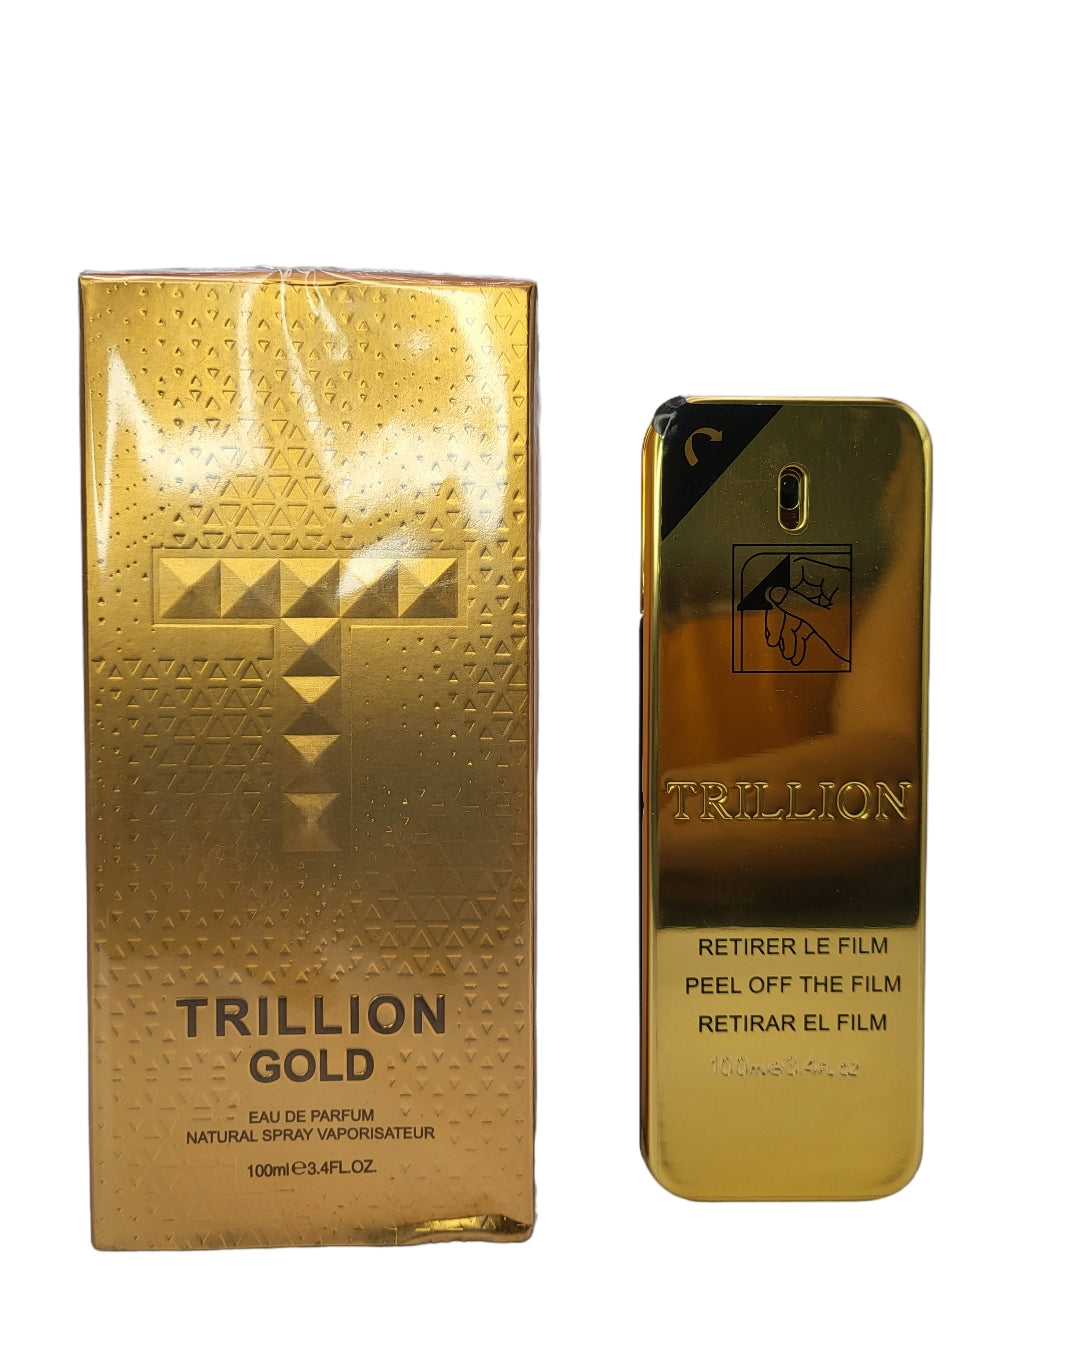 Trillion Gold Eau De Parfum 3.4 Oz: Opulent Fragrance for Men by Zoghbi - Elevate Your Scent Experience